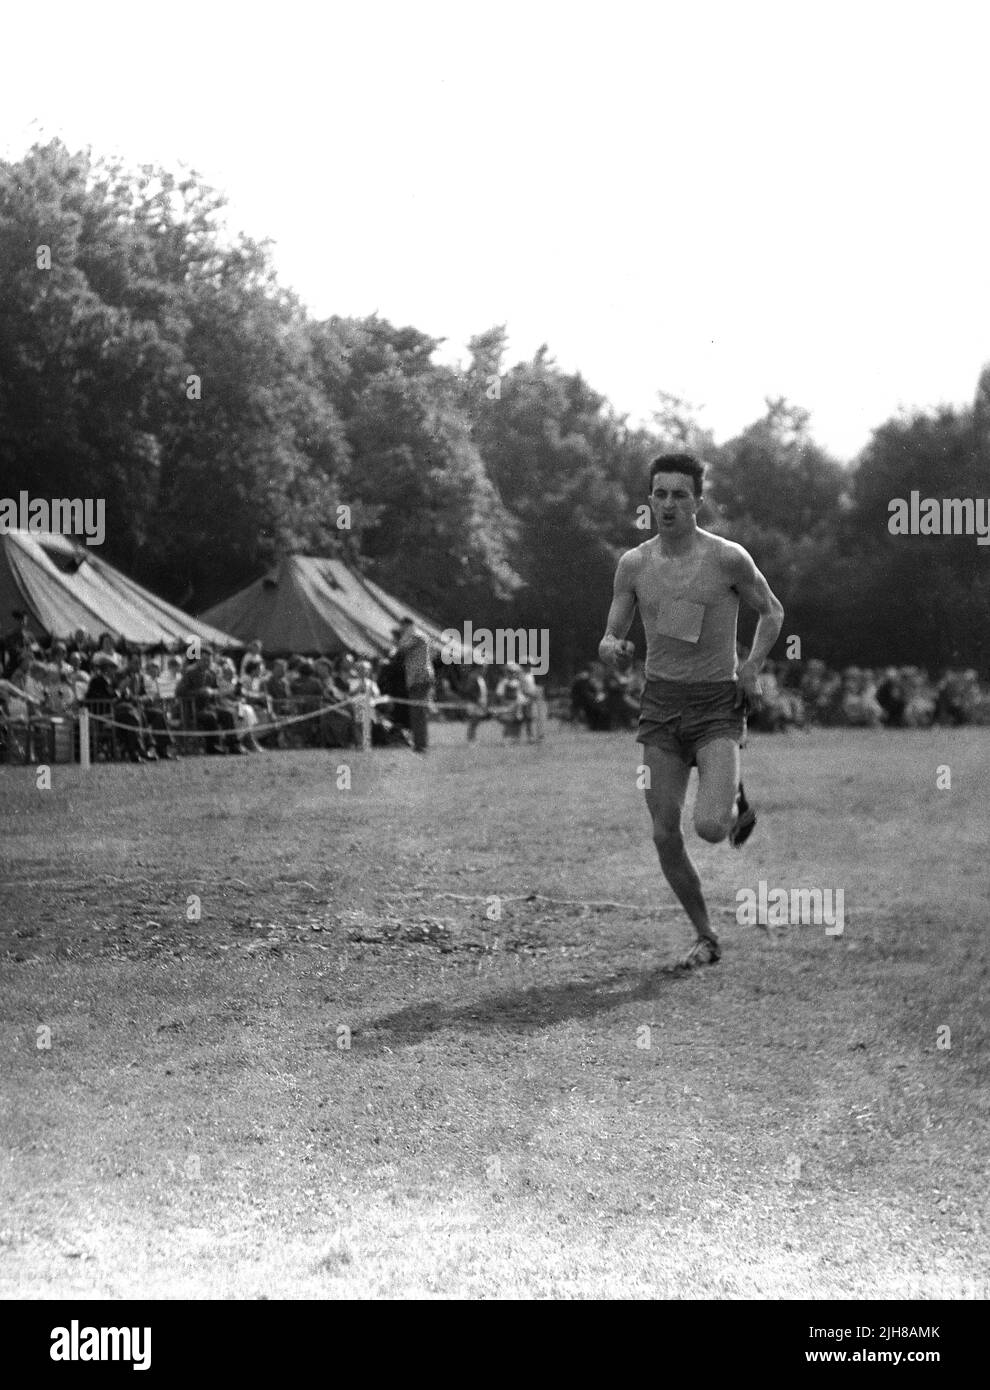 1960s, historique, un athlète masculin qui court dehors sur un terrain d'herbe, Angleterre, Royaume-Uni. Banque D'Images